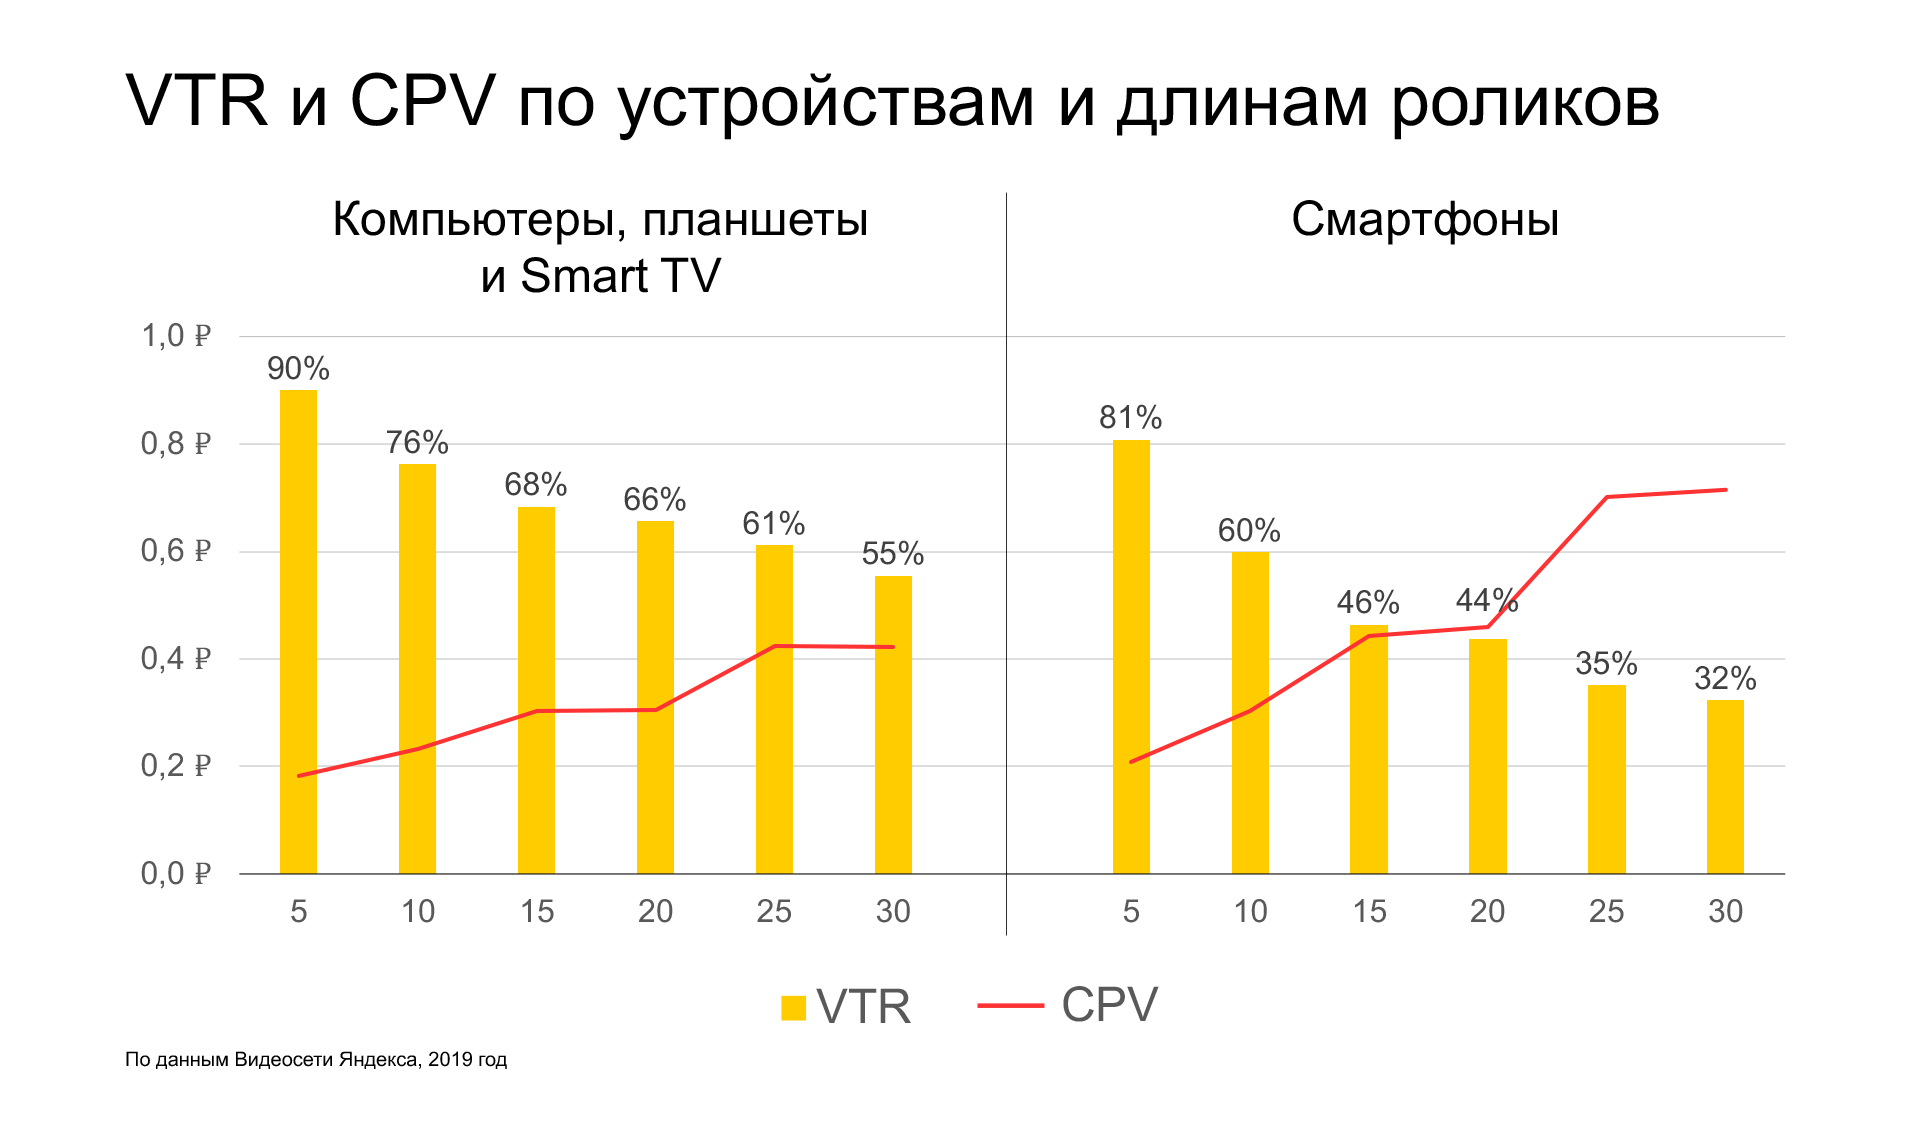 Исследование рынка онлайн-видеорекламы от Яндекса за 2019 год: VTR и CPV по устройствам и длинам роликов